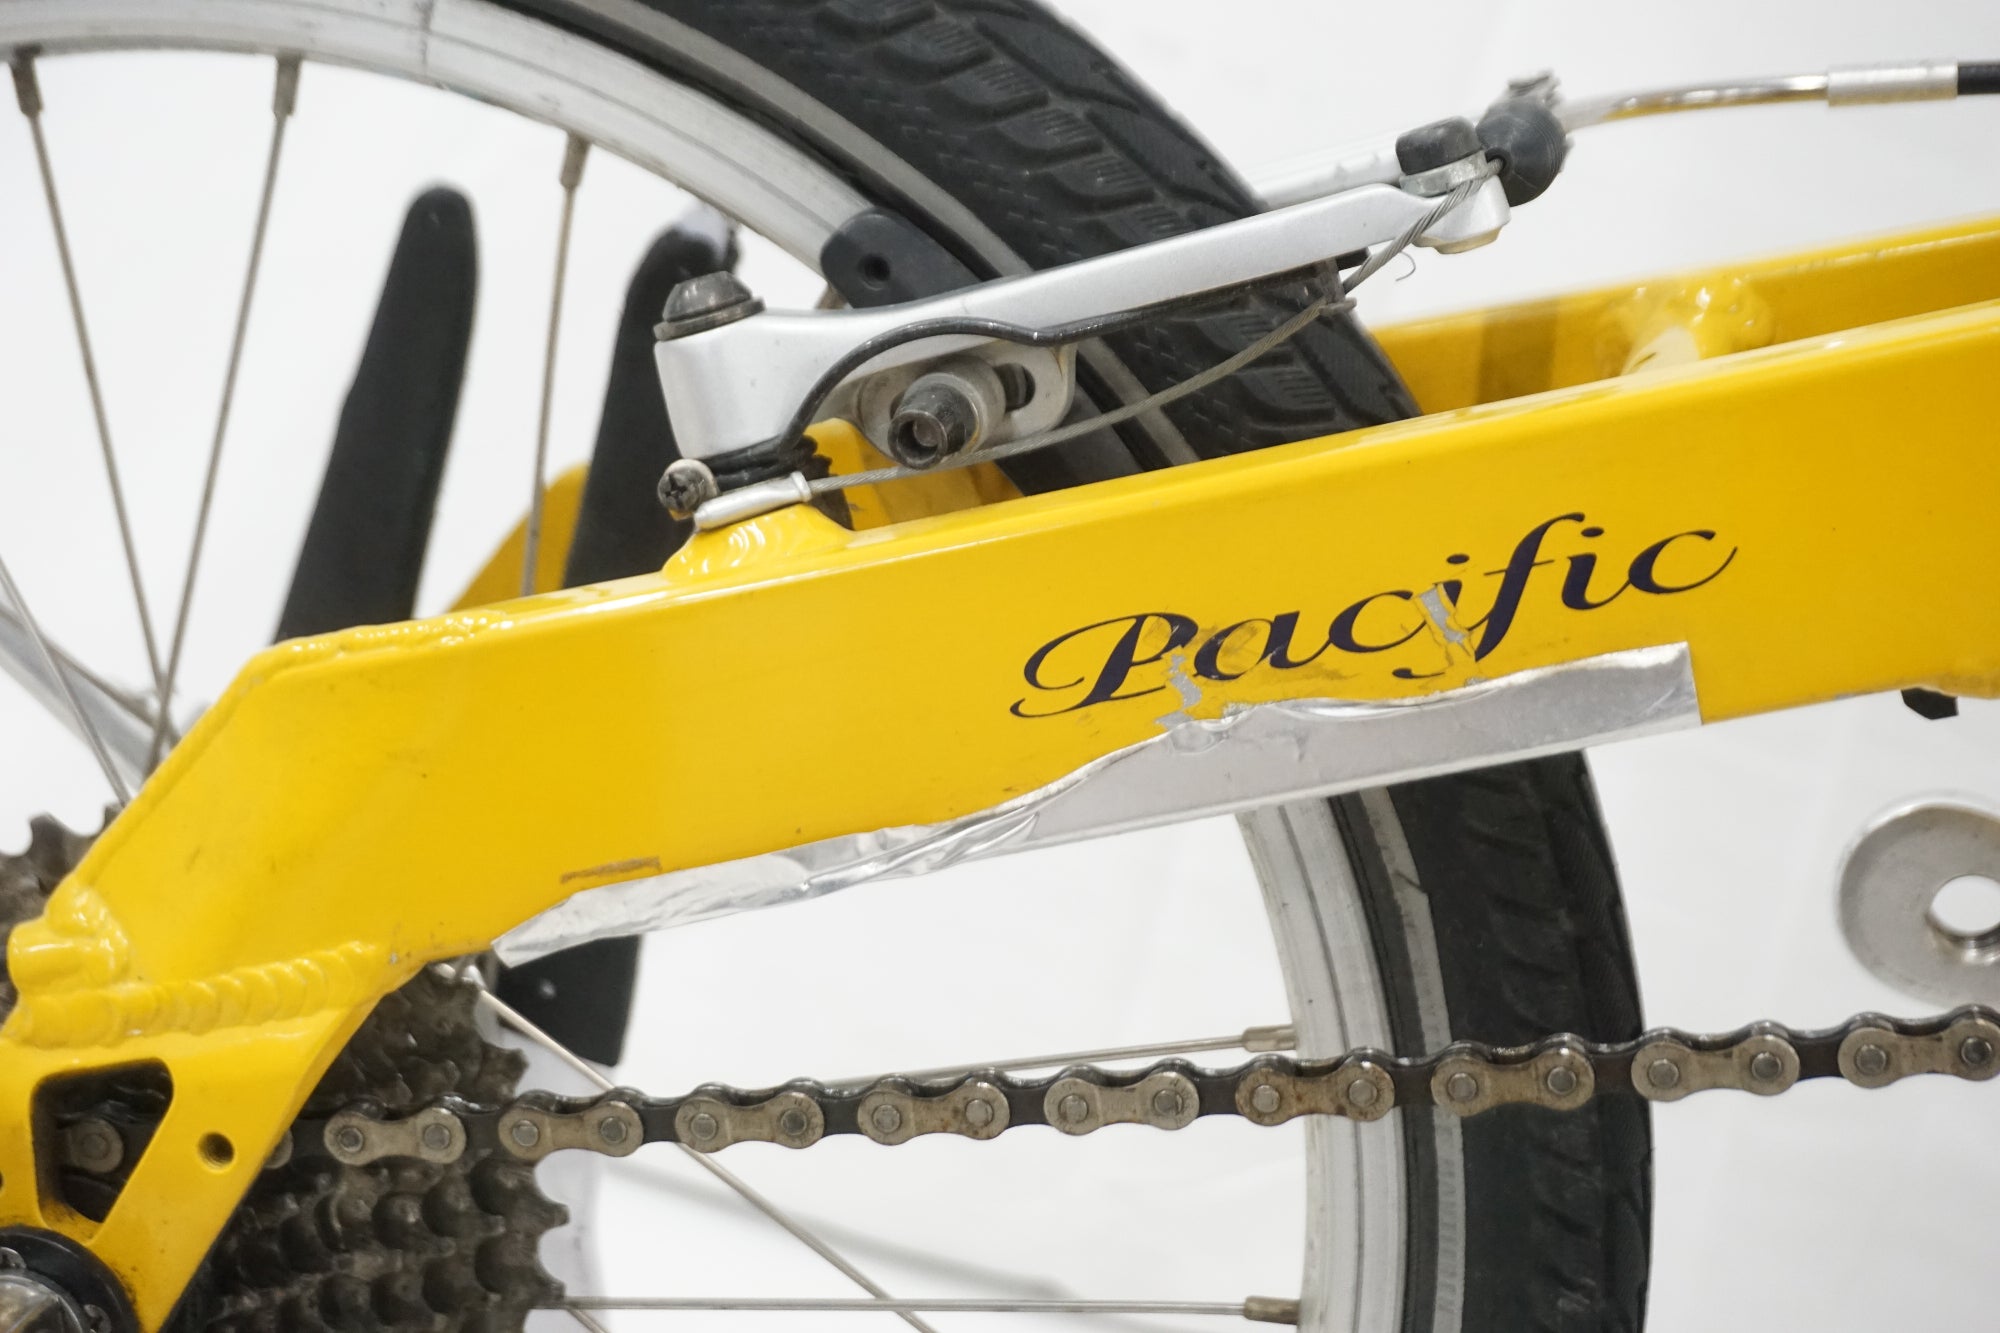 PEUGEOT 「プジョー」 Pacific-18 BD-1 年式不明 折り畳み自転車 / 奈良店